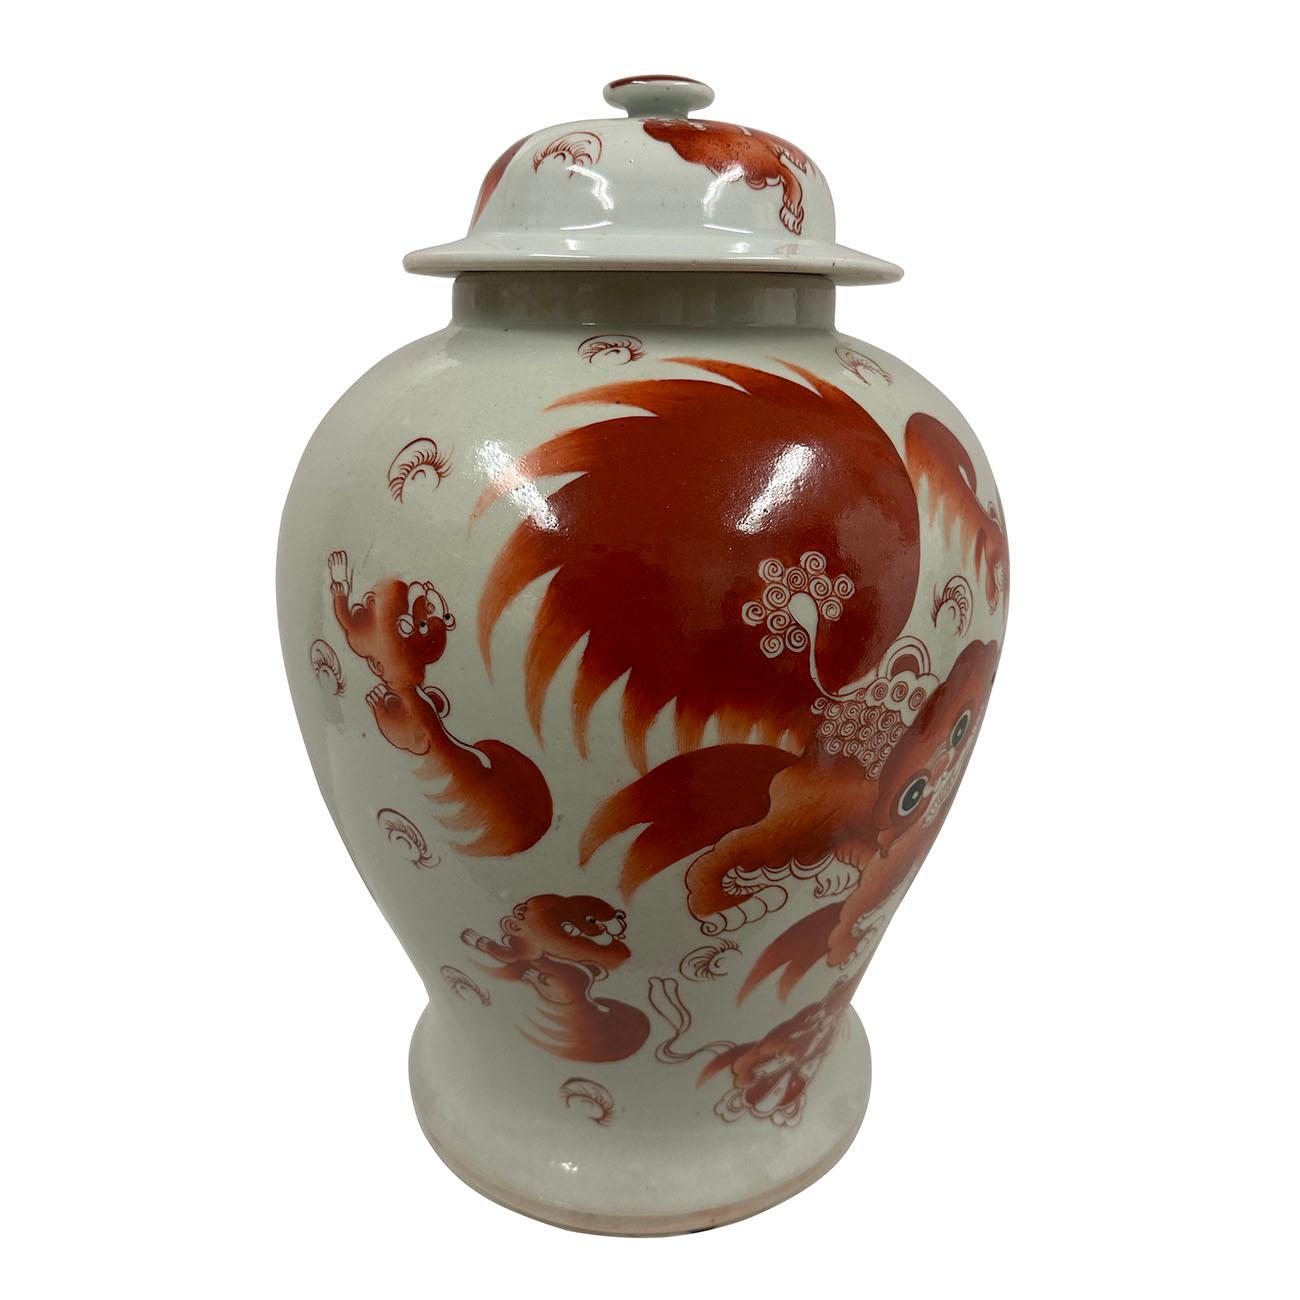 Dieses prächtige antike chinesische Famille-Rose Porzellan Ingwer Glas wurde 100% handgefertigt und handbemalt aus berühmten chinesischen Famille-Rose Porzellan. Es hat schöne handgemalte foo Hunde spielen auf dem Glas und Deckel. Sie können von den